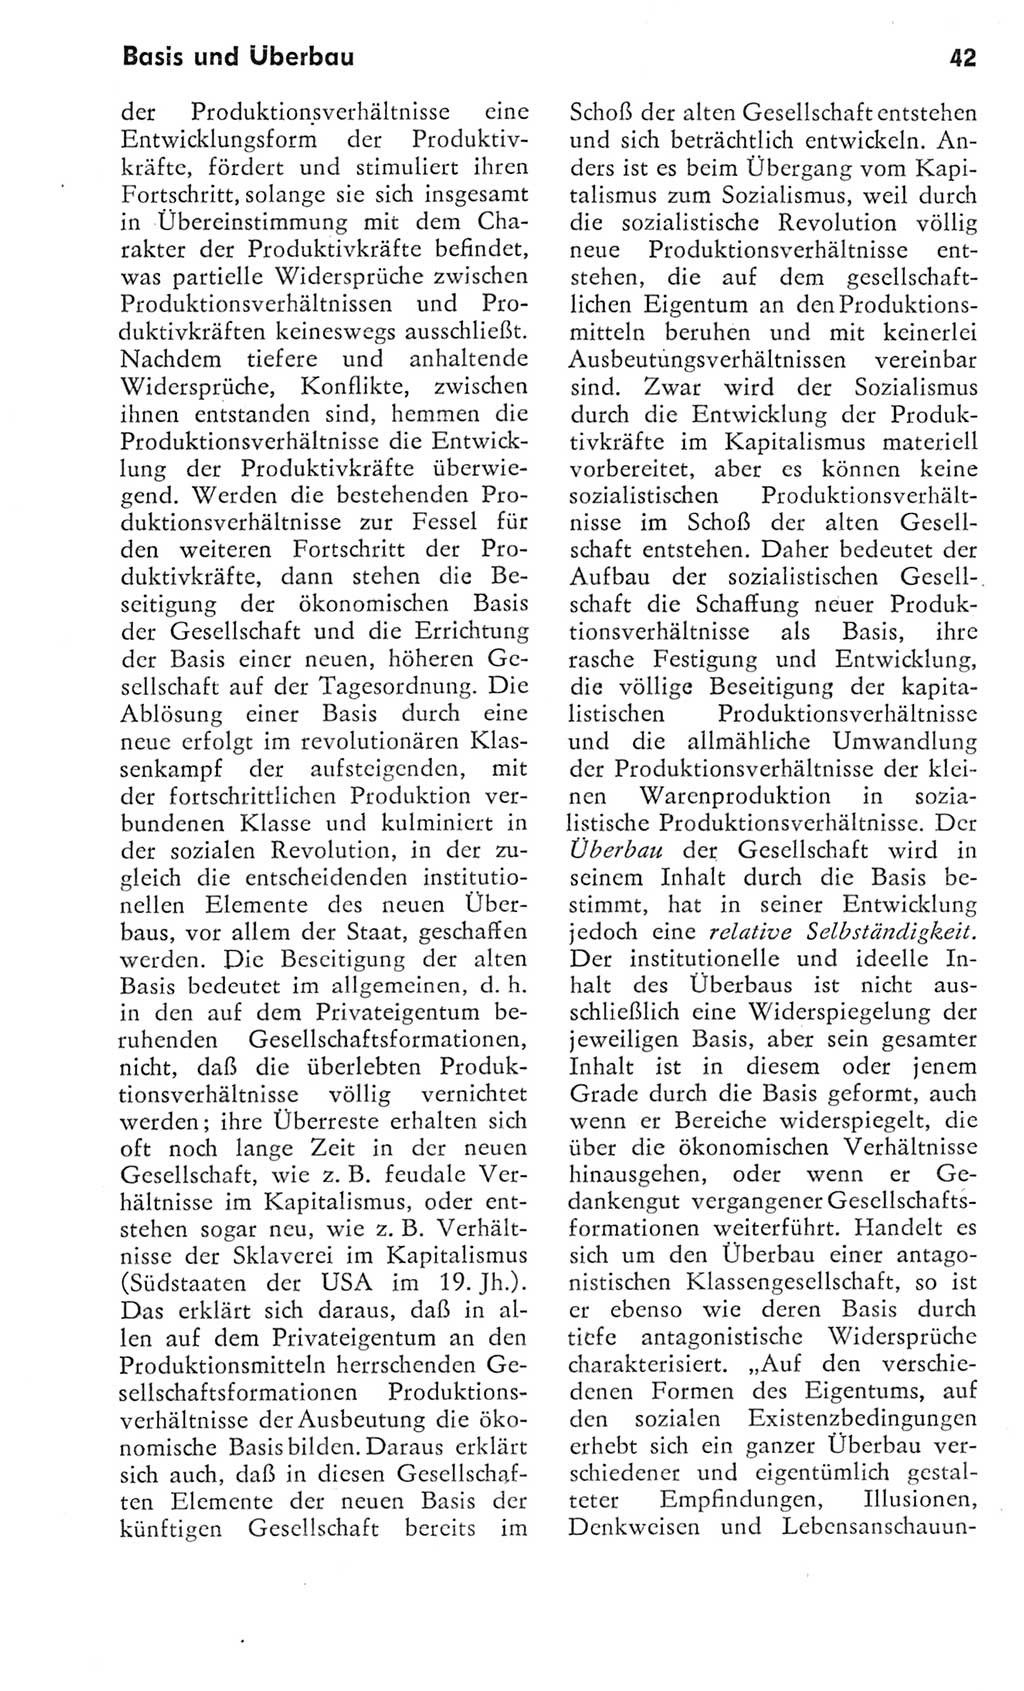 Kleines Wörterbuch der marxistisch-leninistischen Philosophie [Deutsche Demokratische Republik (DDR)] 1975, Seite 42 (Kl. Wb. ML Phil. DDR 1975, S. 42)